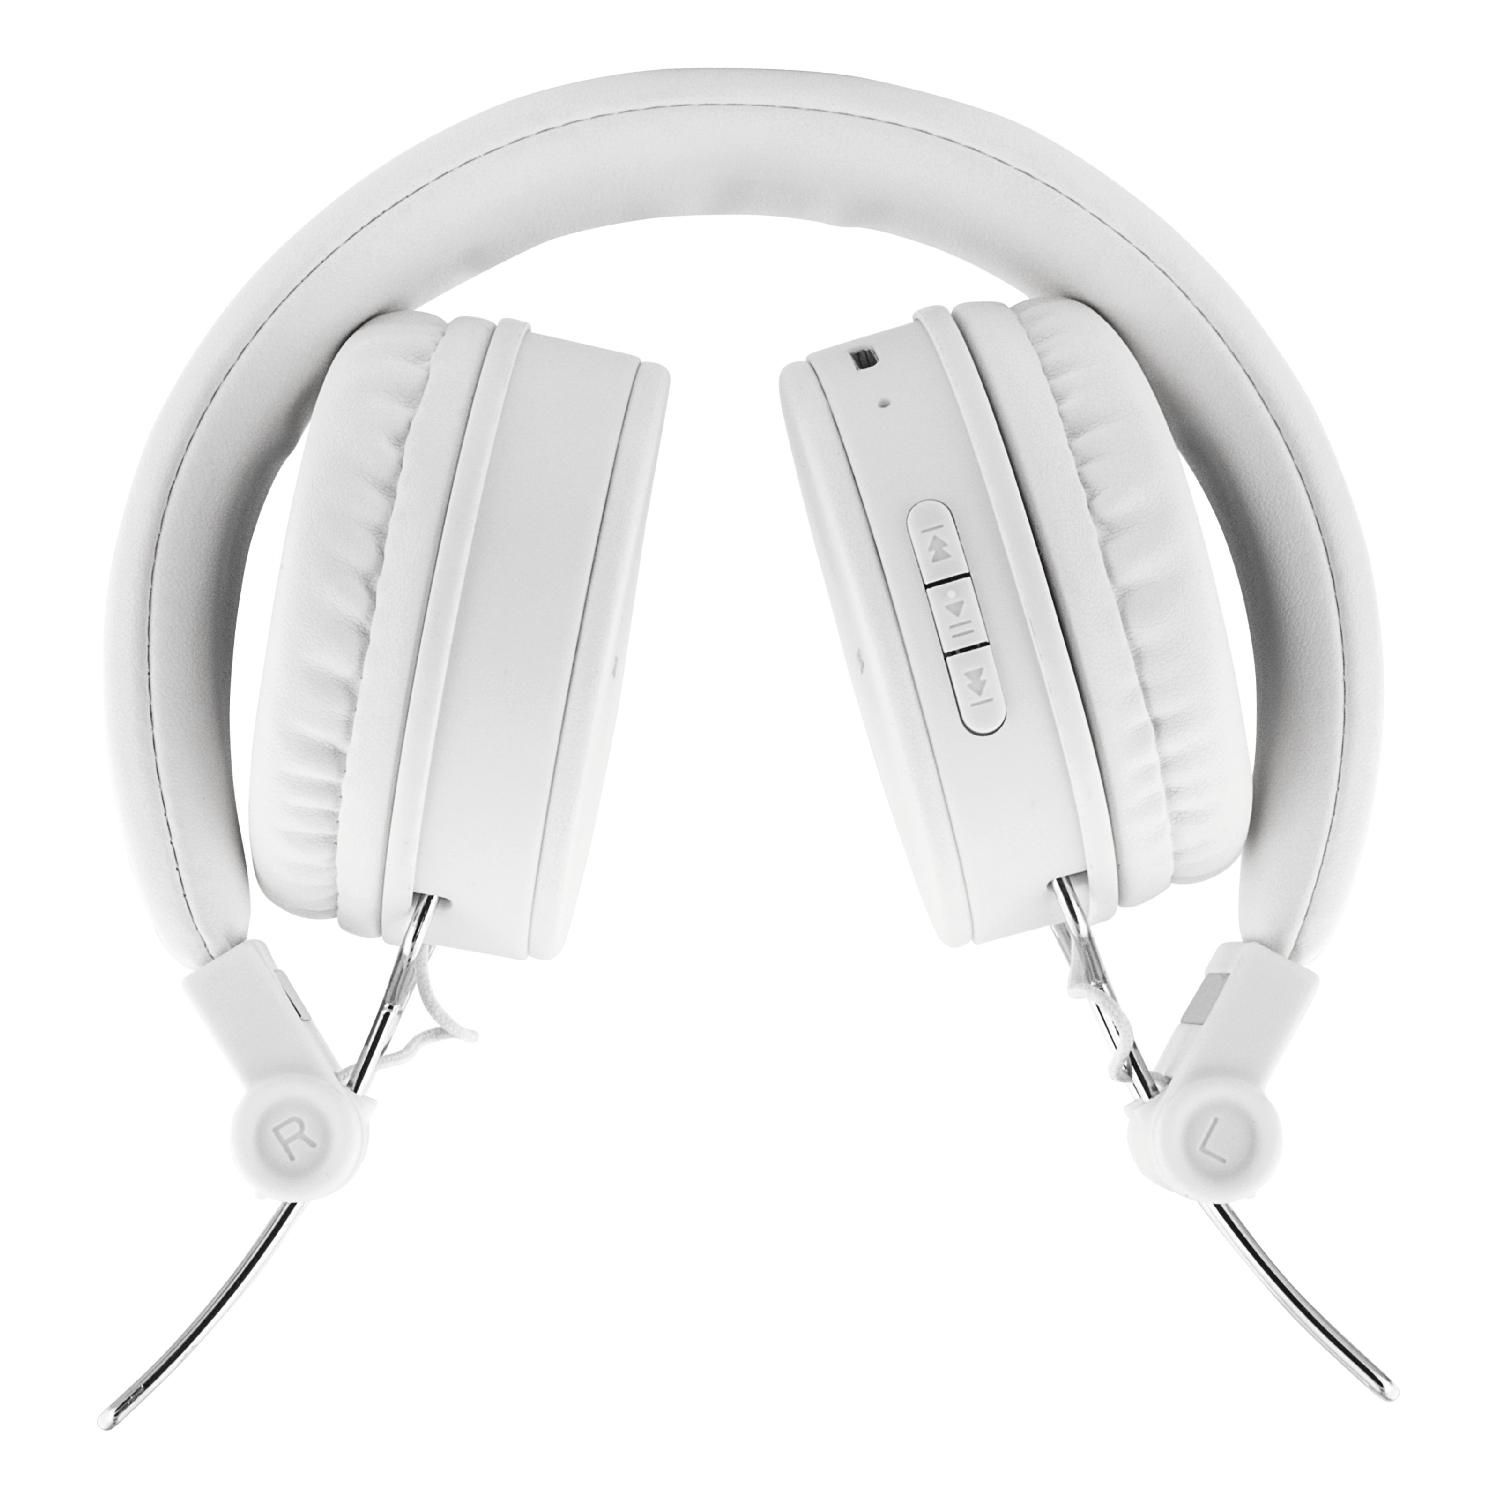 STREETZ Bluetooth Kopfhörer, Over-ear weiß faltbar, Kopfhörer